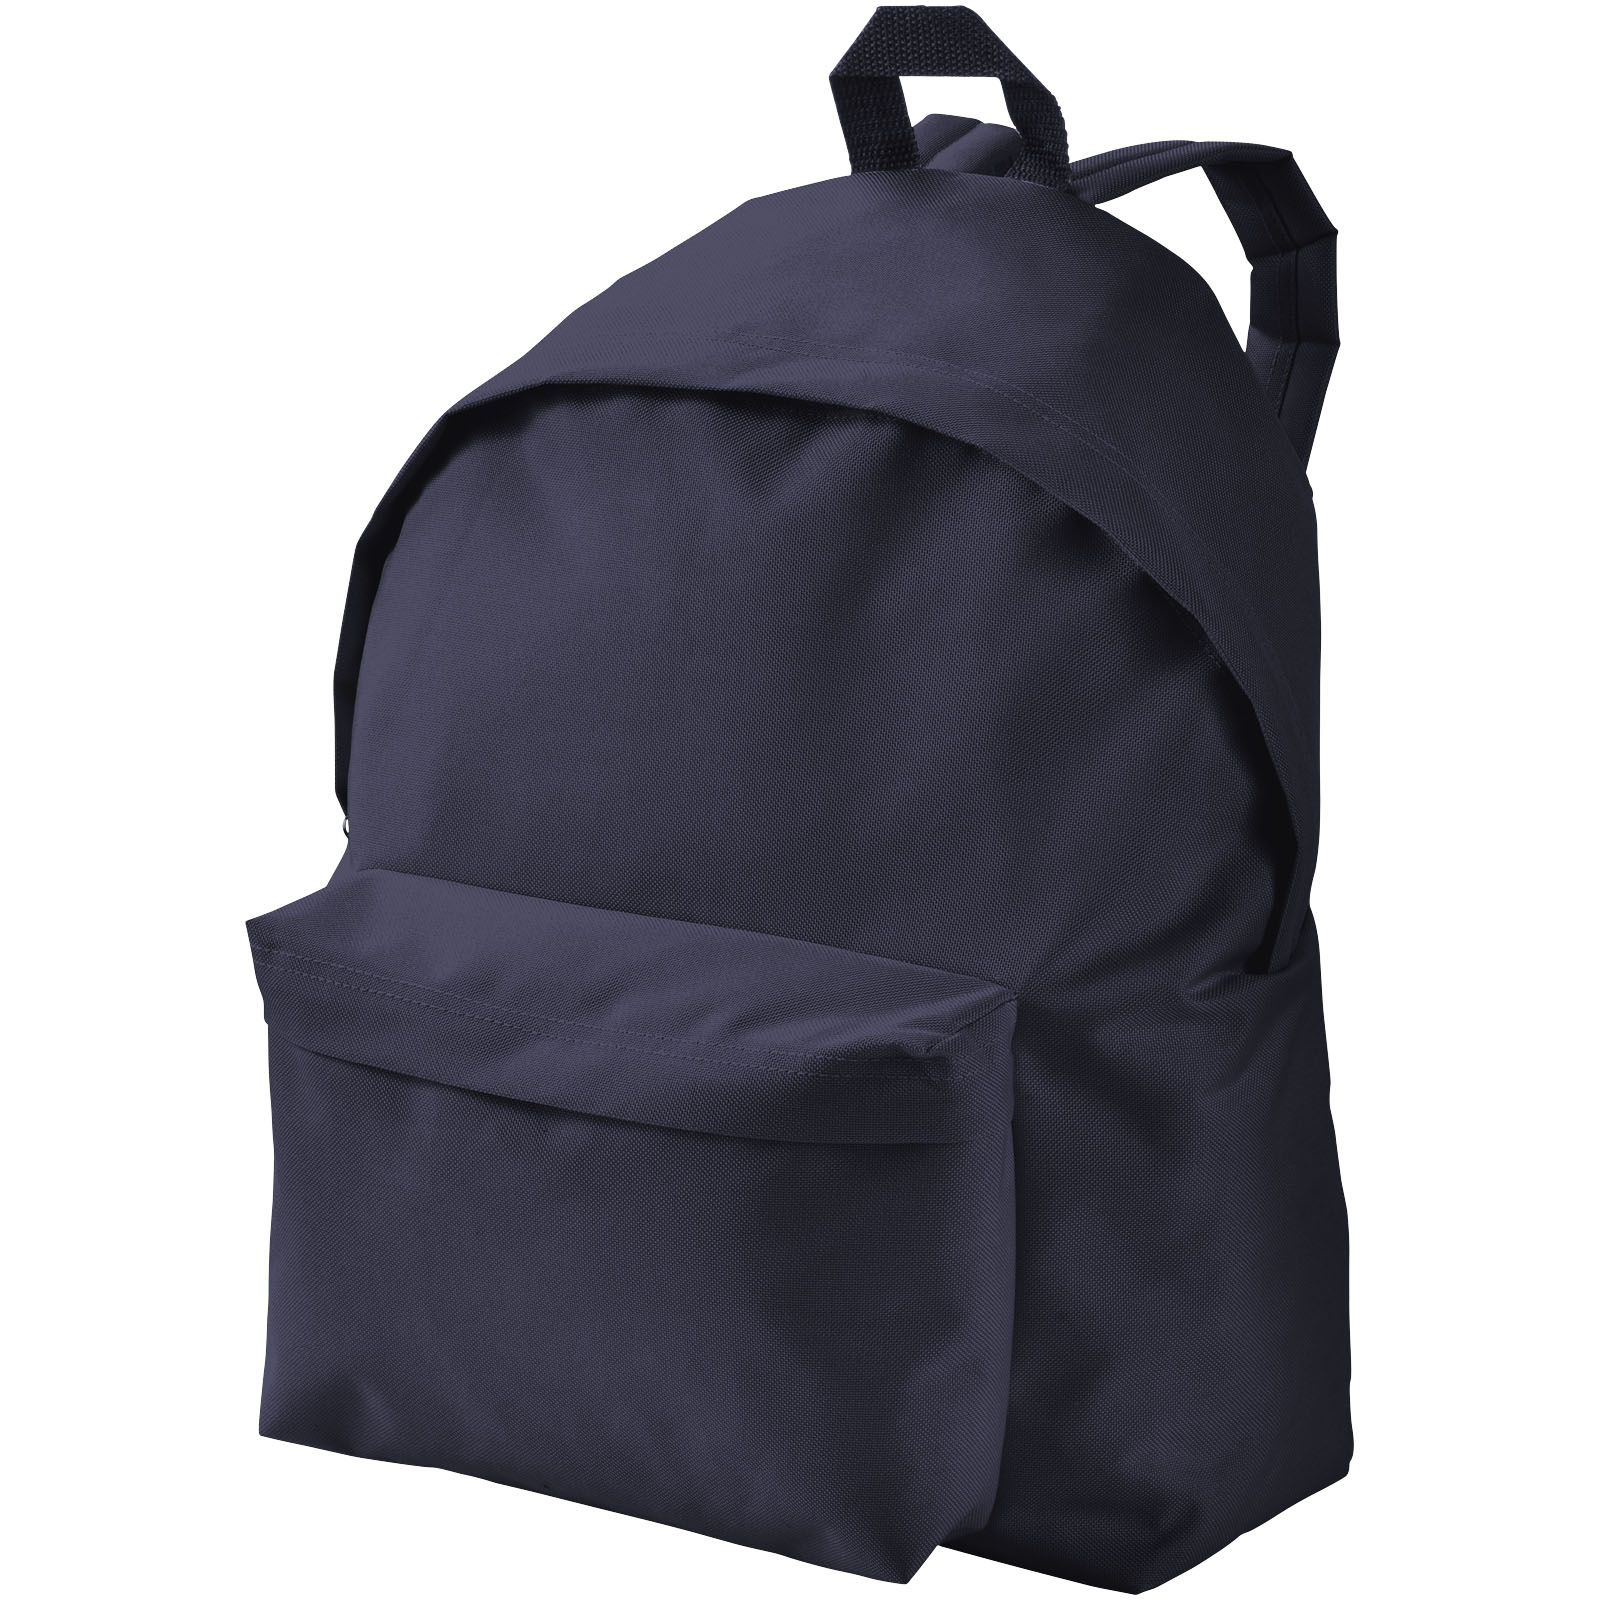 Bags - Urban covered zipper backpack 14L